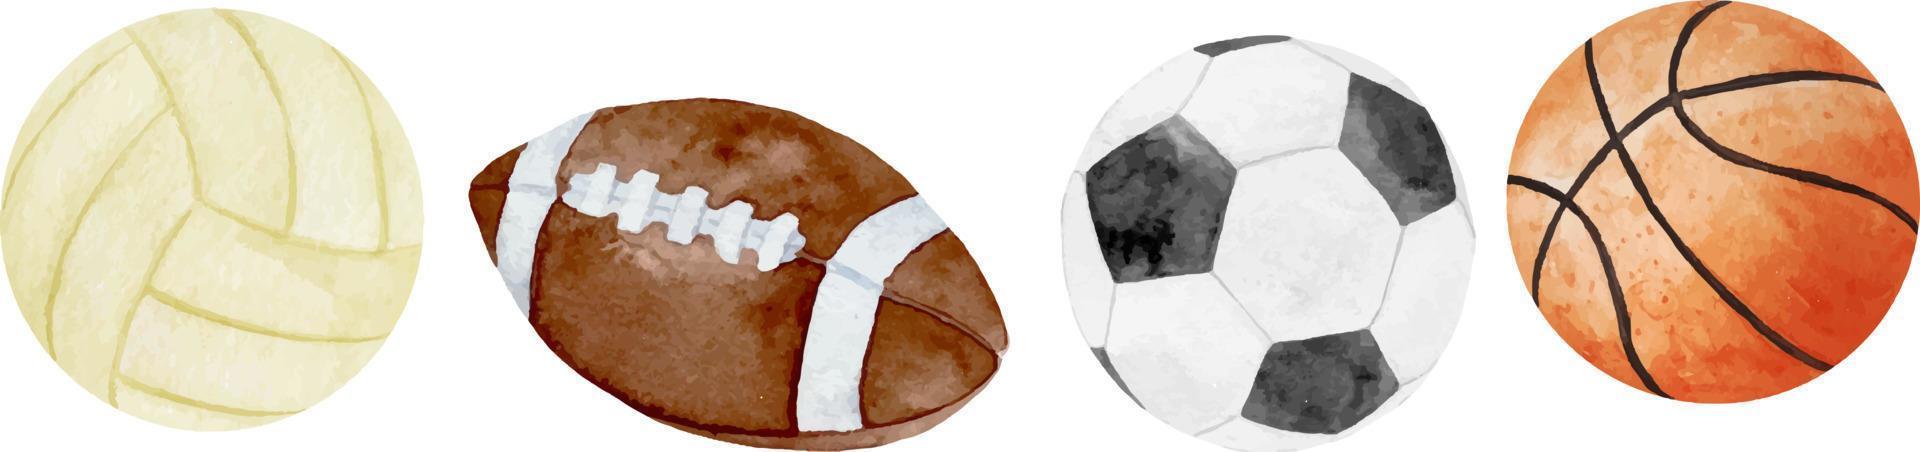 vattenfärg illustration av sport bollar uppsättning fotboll, fotboll, basketboll och baseboll isolerat på vit bakgrund vektor